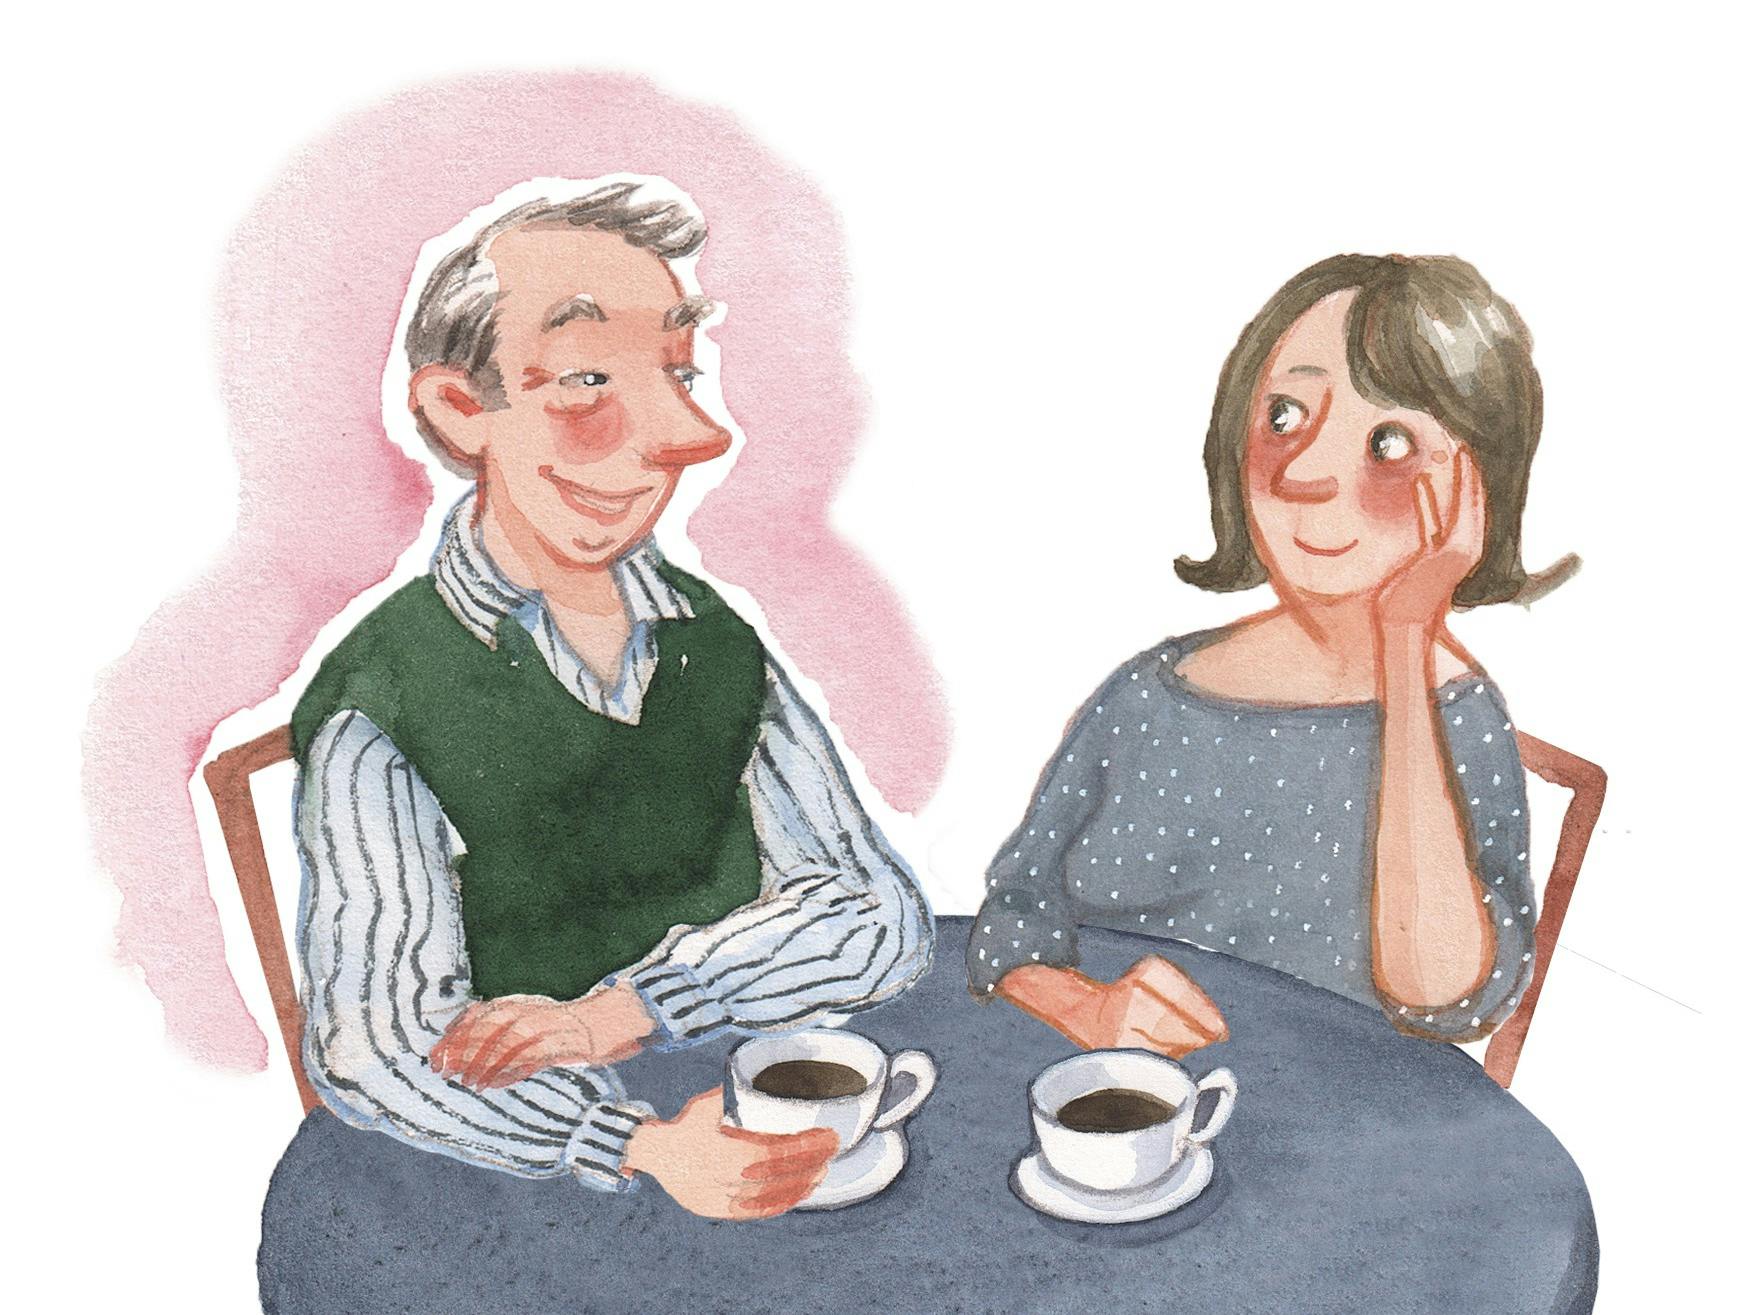 Mand og kvinde på kaffedate